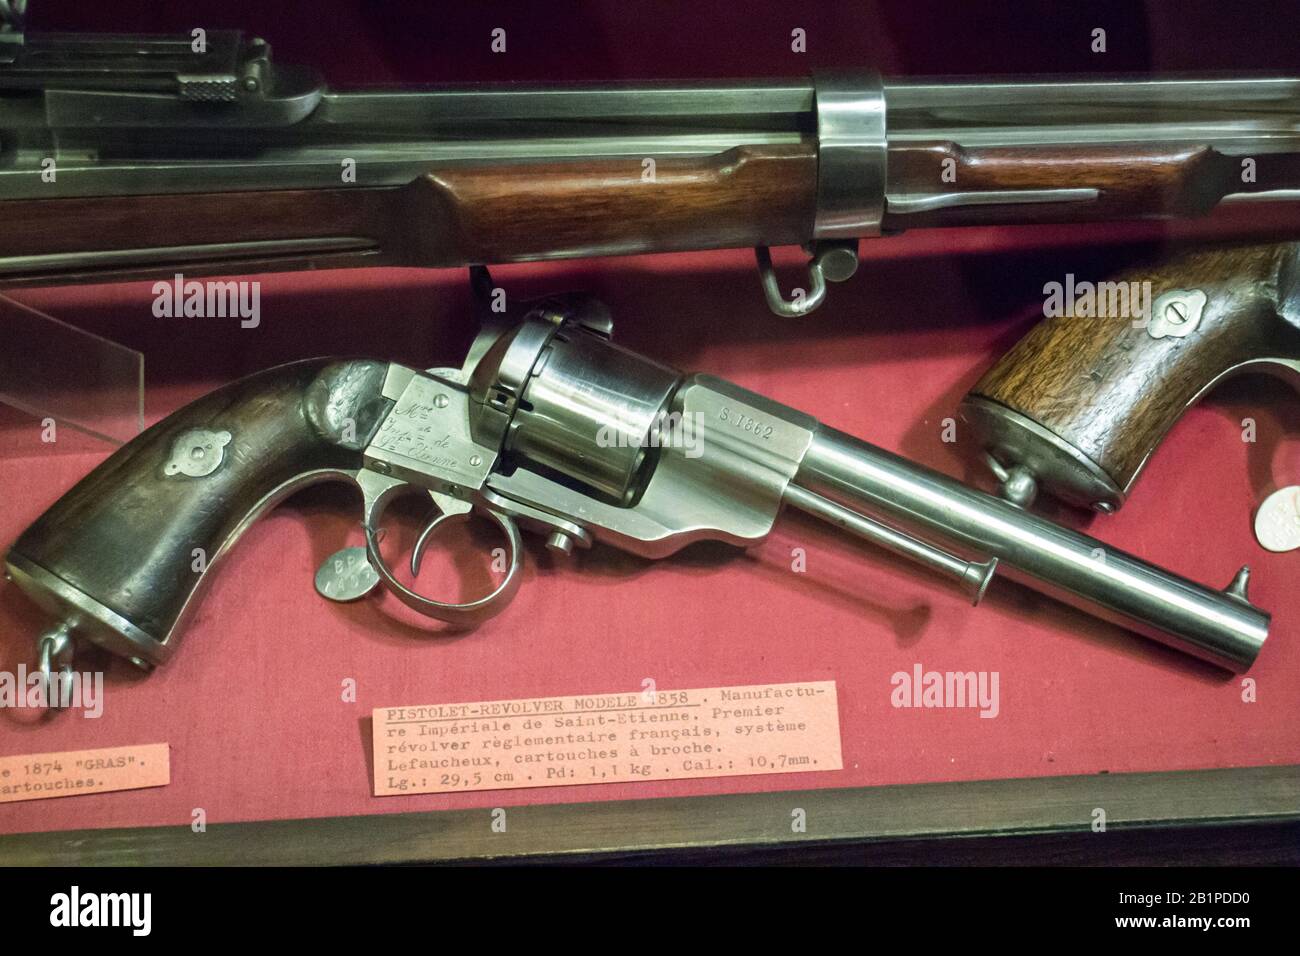 Musée de l'Emperi,Salon-de-Provence : Pistolet-revolver modèle 1858,système LEFAUCHEUX calibre 10,7mm Stock Photo